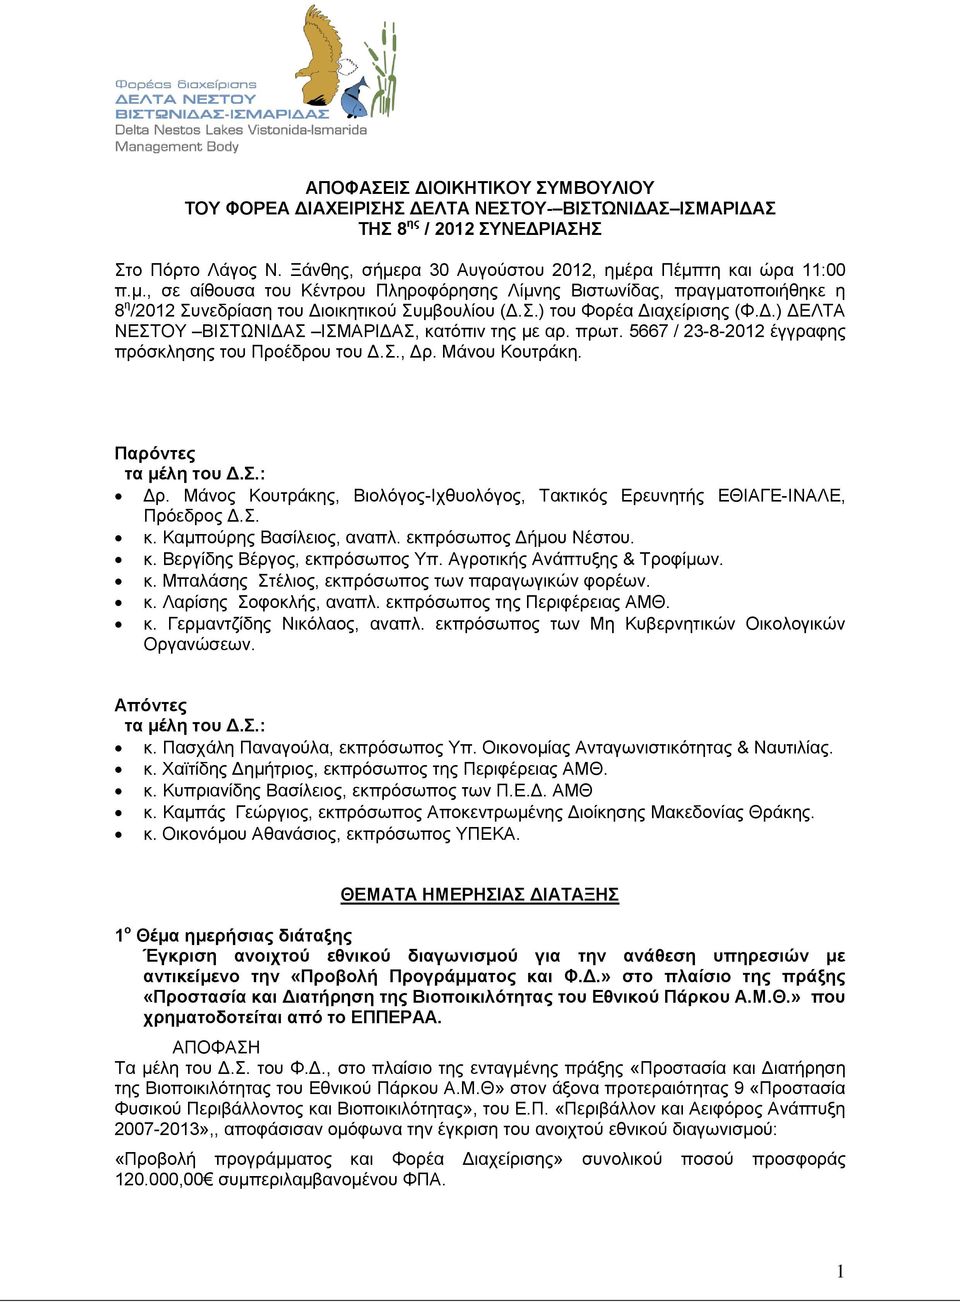 πρωτ. 5667 / 23-8-2012 έγγραφης πρόσκλησης του Προέδρου του Δ.Σ., Δρ. Μάνου Κουτράκη. Παρόντες τα μέλη του Δ.Σ.: Δρ. Μάνος Κουτράκης, Βιολόγος-Ιχθυολόγος, Τακτικός Ερευνητής ΕΘΙΑΓΕ-ΙΝΑΛΕ, Πρόεδρος Δ.